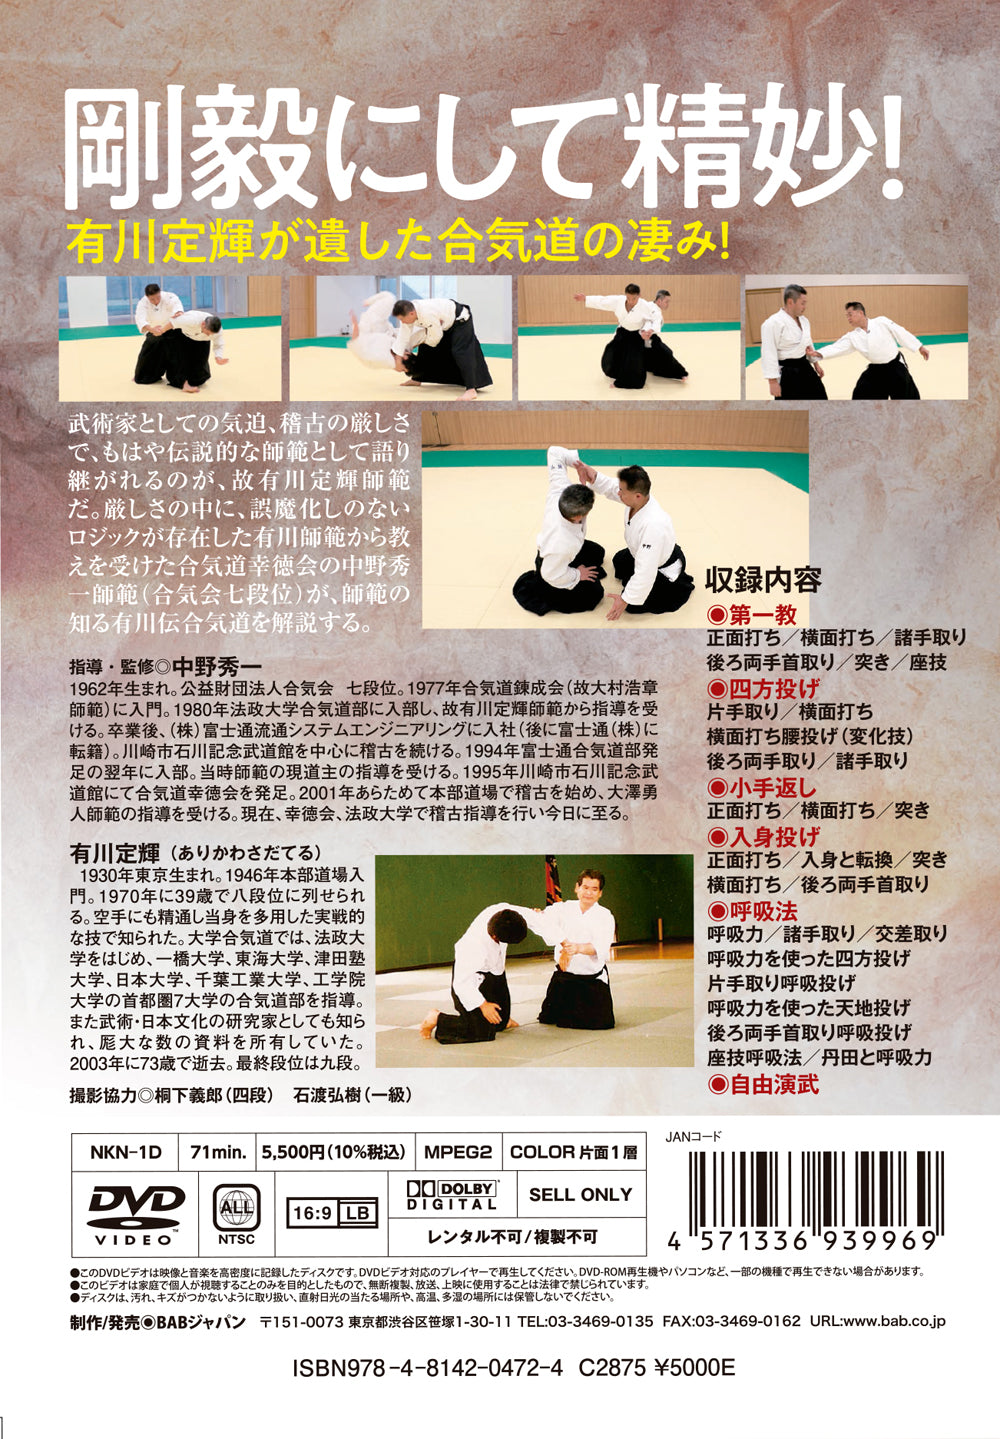 Aikido al estilo Sadateru Arikawa DVD de Shuichi Nakano